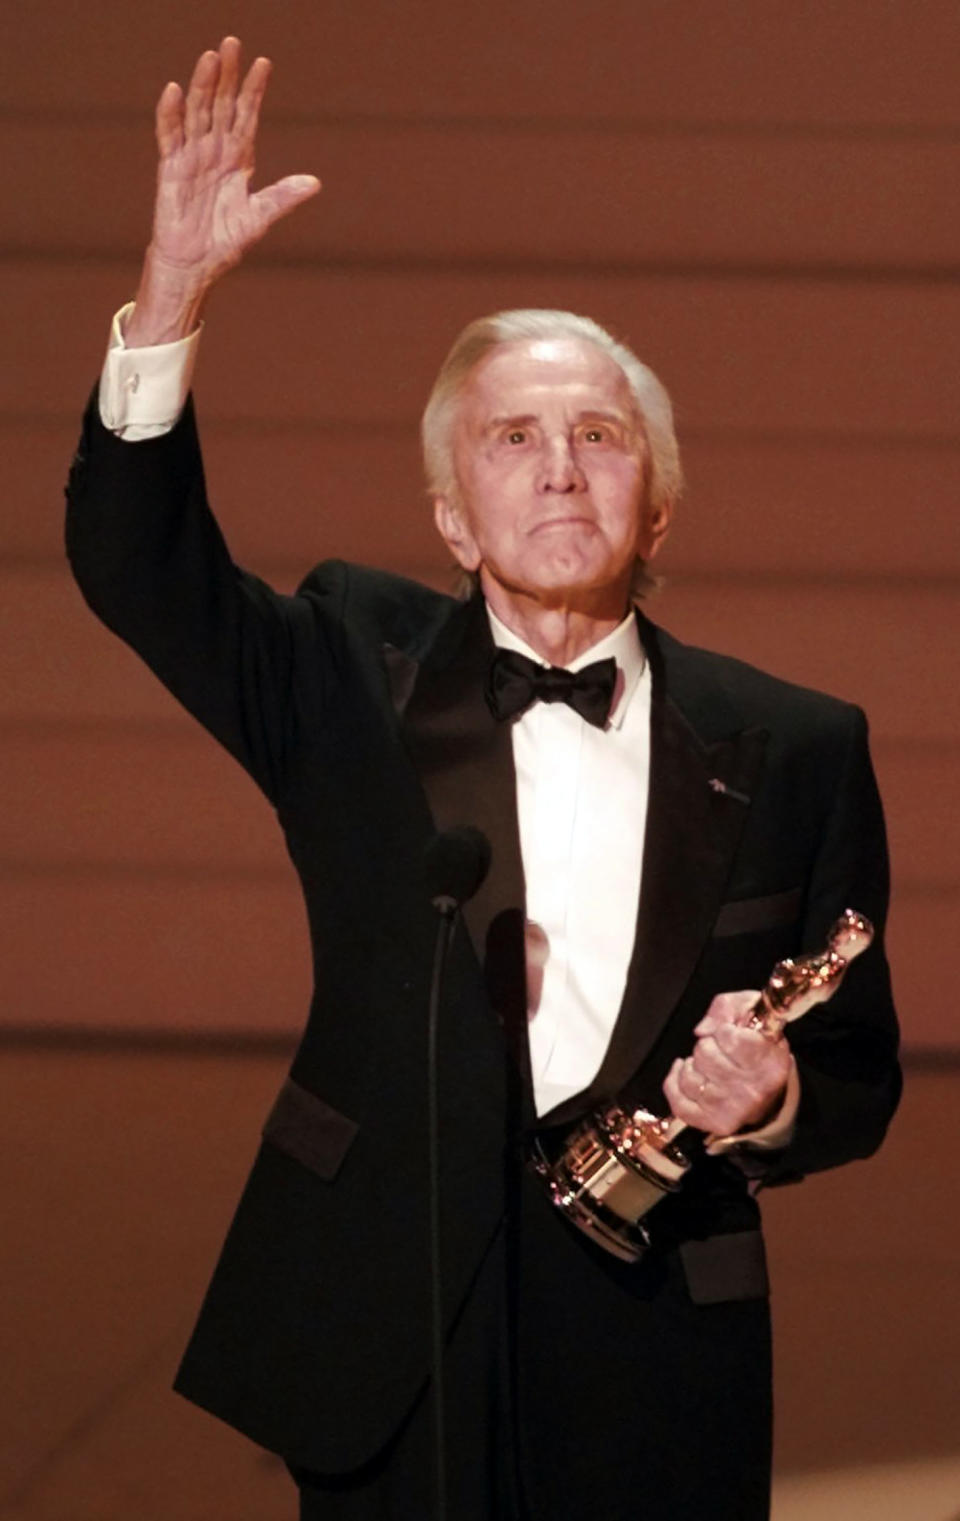 ARCHIVO - En esta imagen del lunes 25 de marzo de 1996, la estrella de Hollywood Kirk Douglas acepta un Oscar honorífico en Los Ángeles. (AP Foto/Eric Draper, Archivo)